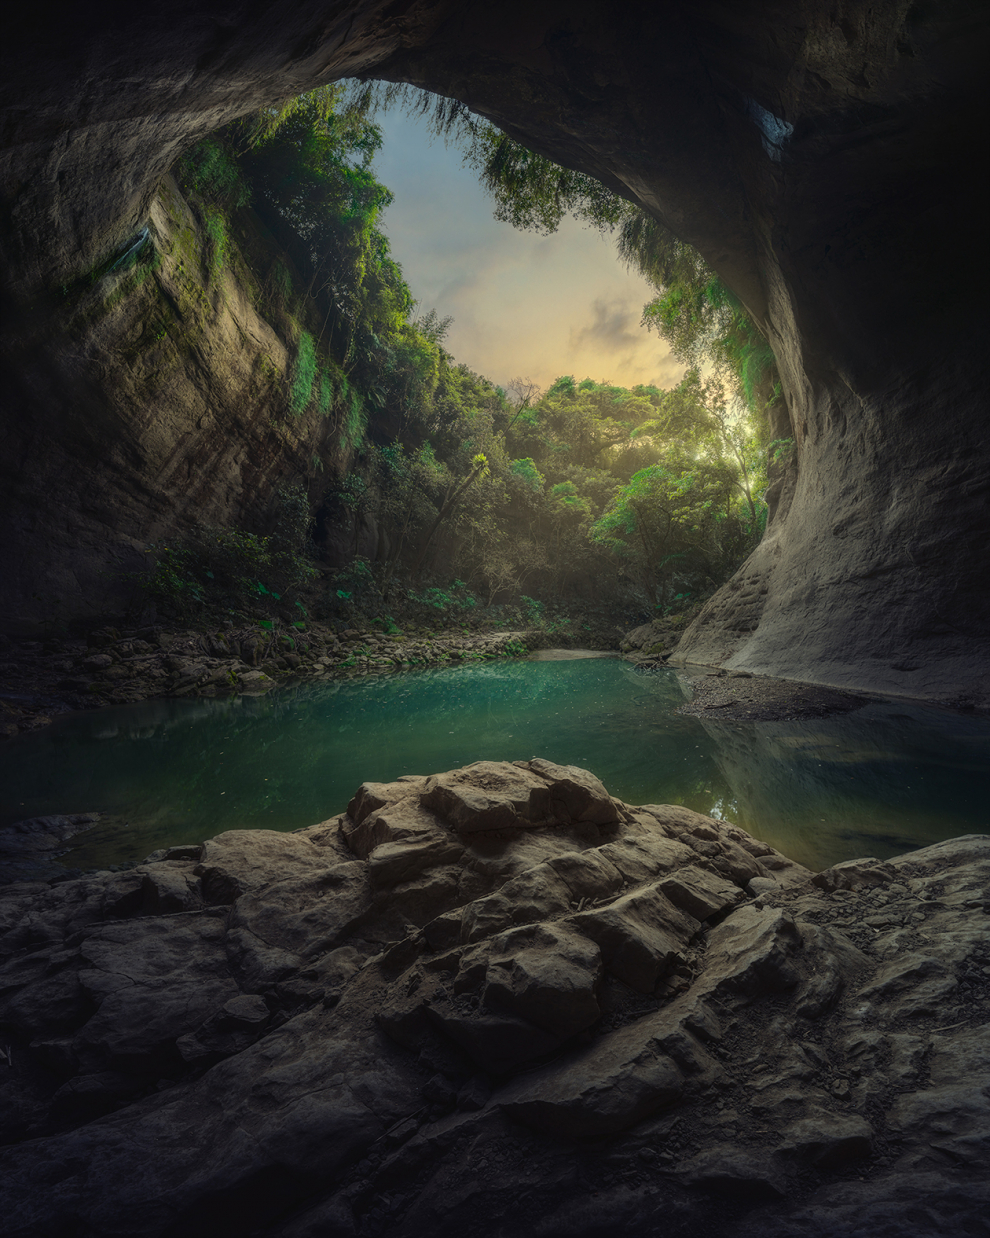 Muchos murciélagos habitaron esta cueva en la antigüedad. Han desaparecido debido a los cambios ambientales actuales.